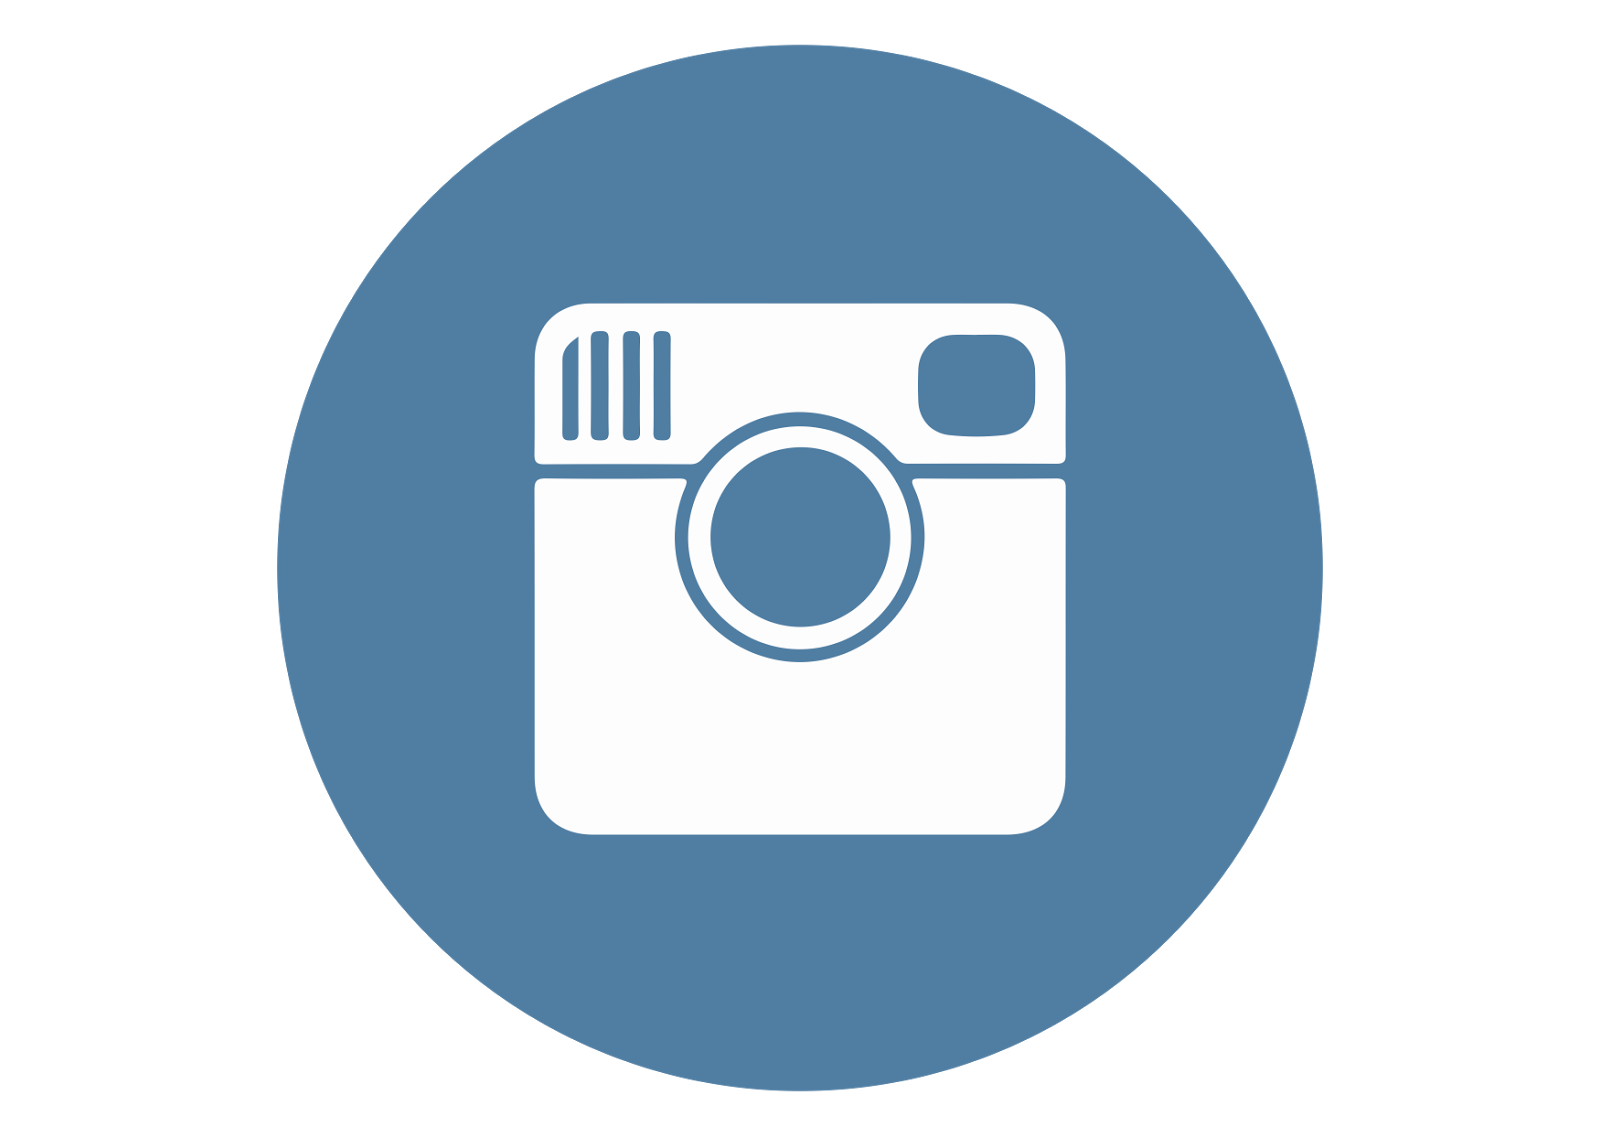 instagram logo vector free download